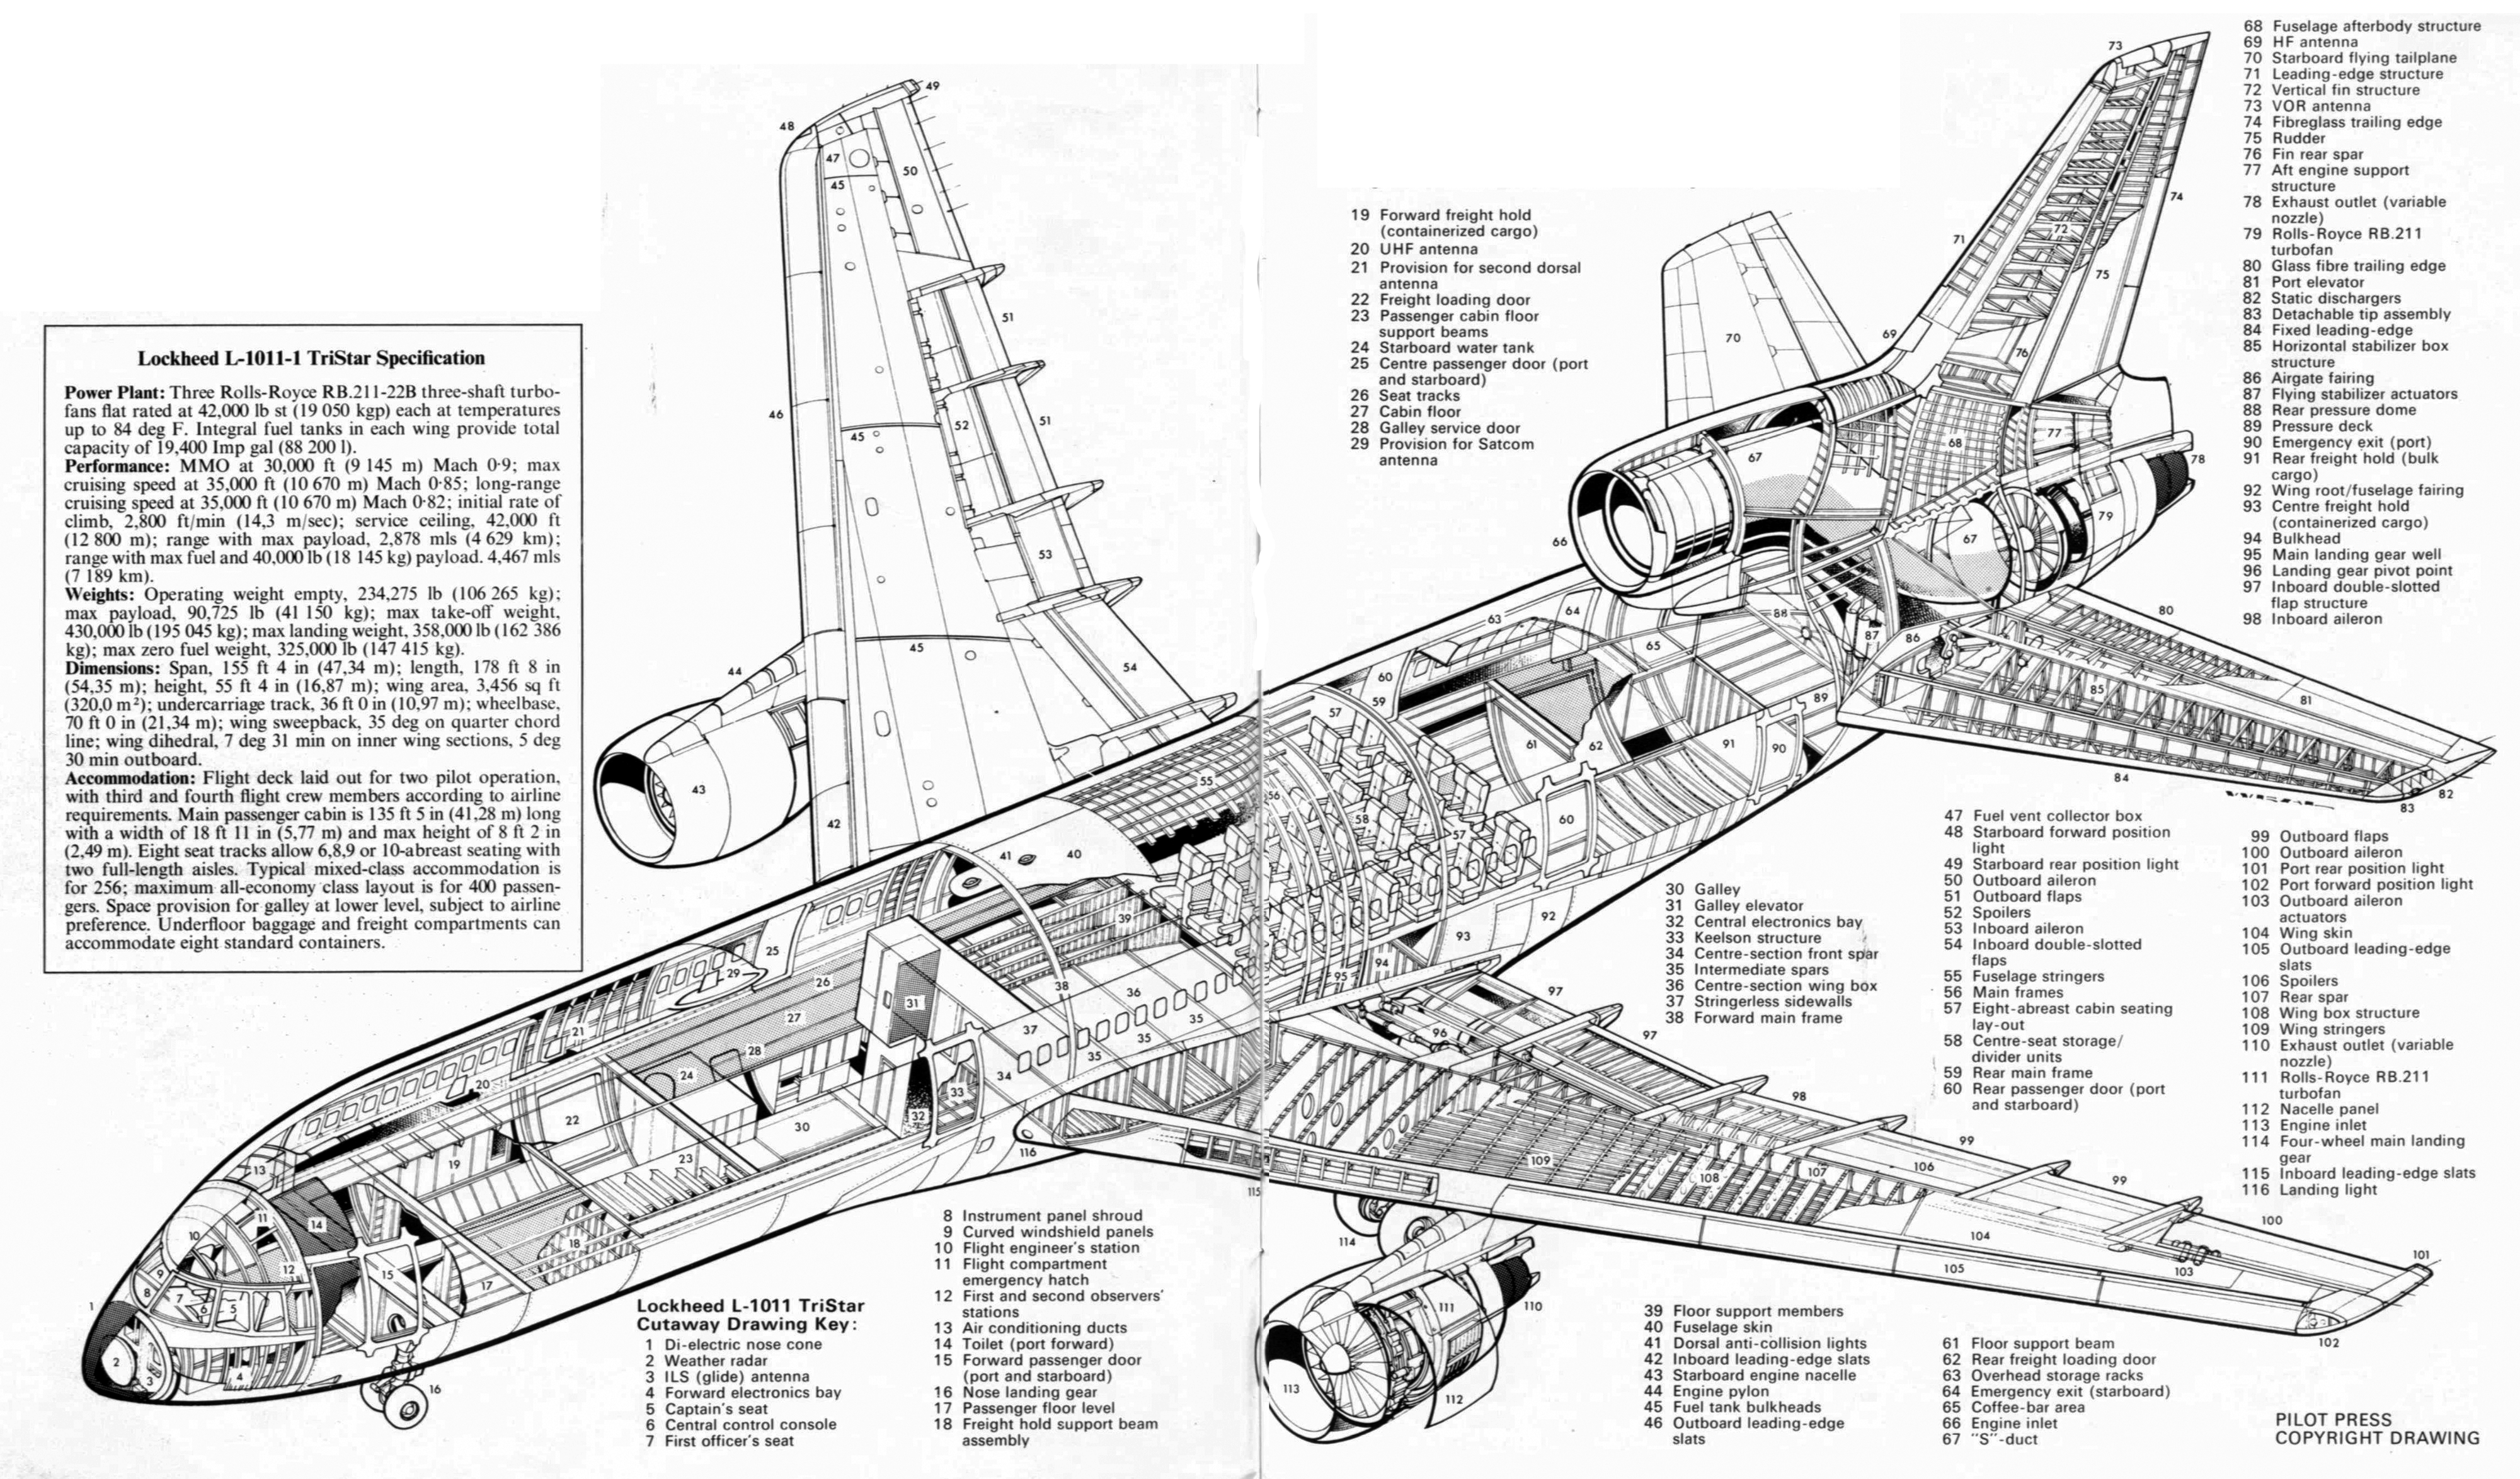 Боинг 717 - boeing 717 - abcdef.wiki